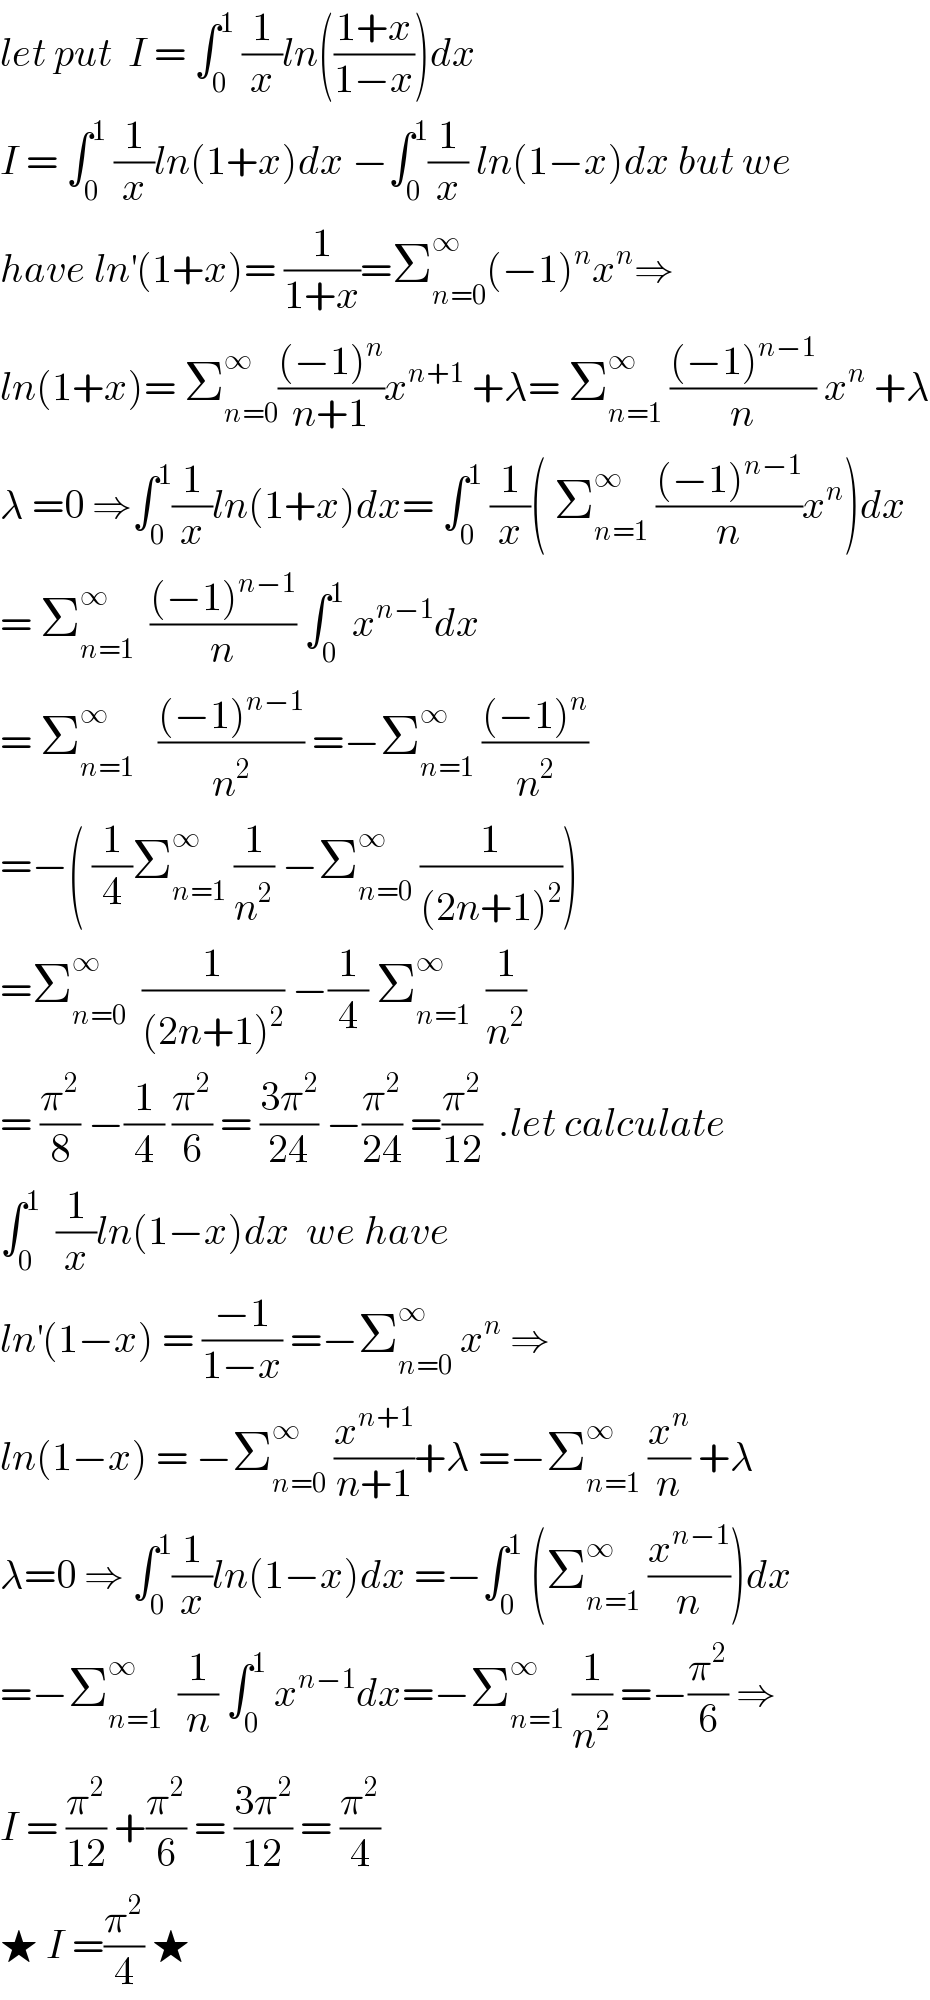 let put  I = ∫_0 ^1  (1/x)ln(((1+x)/(1−x)))dx  I = ∫_0 ^1  (1/x)ln(1+x)dx −∫_0 ^1 (1/x) ln(1−x)dx but we  have ln^′ (1+x)= (1/(1+x))=Σ_(n=0) ^∞ (−1)^n x^n ⇒  ln(1+x)= Σ_(n=0) ^∞ (((−1)^n )/(n+1))x^(n+1)  +λ= Σ_(n=1) ^∞  (((−1)^(n−1) )/n) x^n  +λ  λ =0 ⇒∫_0 ^1 (1/x)ln(1+x)dx= ∫_0 ^1  (1/x)( Σ_(n=1) ^∞  (((−1)^(n−1) )/n)x^n )dx  = Σ_(n=1) ^∞   (((−1)^(n−1) )/n) ∫_0 ^1  x^(n−1) dx  = Σ_(n=1) ^∞    (((−1)^(n−1) )/n^2 ) =−Σ_(n=1) ^∞  (((−1)^n )/n^2 )  =−( (1/4)Σ_(n=1) ^∞  (1/n^2 ) −Σ_(n=0) ^∞  (1/((2n+1)^2 )))  =Σ_(n=0) ^∞   (1/((2n+1)^2 )) −(1/4) Σ_(n=1) ^∞   (1/n^2 )  = (π^2 /8) −(1/4) (π^2 /6) = ((3π^2 )/(24)) −(π^2 /(24)) =(π^2 /(12))  .let calculate  ∫_0 ^1   (1/x)ln(1−x)dx  we have  ln^′ (1−x) = ((−1)/(1−x)) =−Σ_(n=0) ^∞  x^n  ⇒  ln(1−x) = −Σ_(n=0) ^∞  (x^(n+1) /(n+1))+λ =−Σ_(n=1) ^∞  (x^n /n) +λ  λ=0 ⇒ ∫_0 ^1 (1/x)ln(1−x)dx =−∫_0 ^1  (Σ_(n=1) ^∞  (x^(n−1) /n))dx  =−Σ_(n=1) ^∞   (1/n) ∫_0 ^1  x^(n−1) dx=−Σ_(n=1) ^∞  (1/n^2 ) =−(π^2 /6) ⇒  I = (π^2 /(12)) +(π^2 /6) = ((3π^2 )/(12)) = (π^2 /4)  ★ I =(π^2 /4) ★  